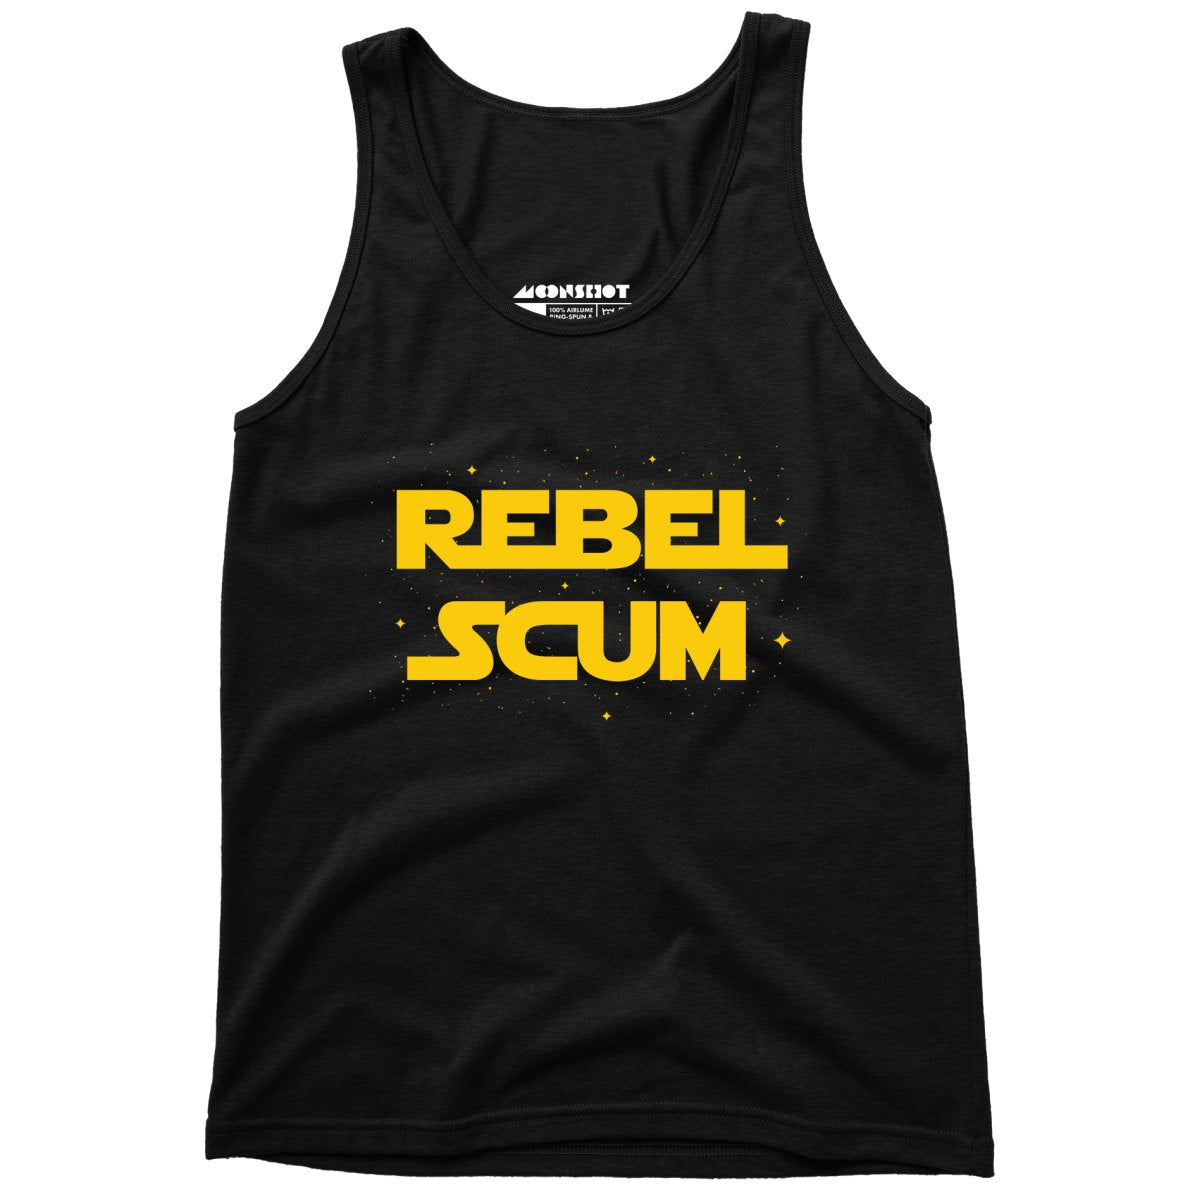 Rebel Scum - Unisex Tank Top